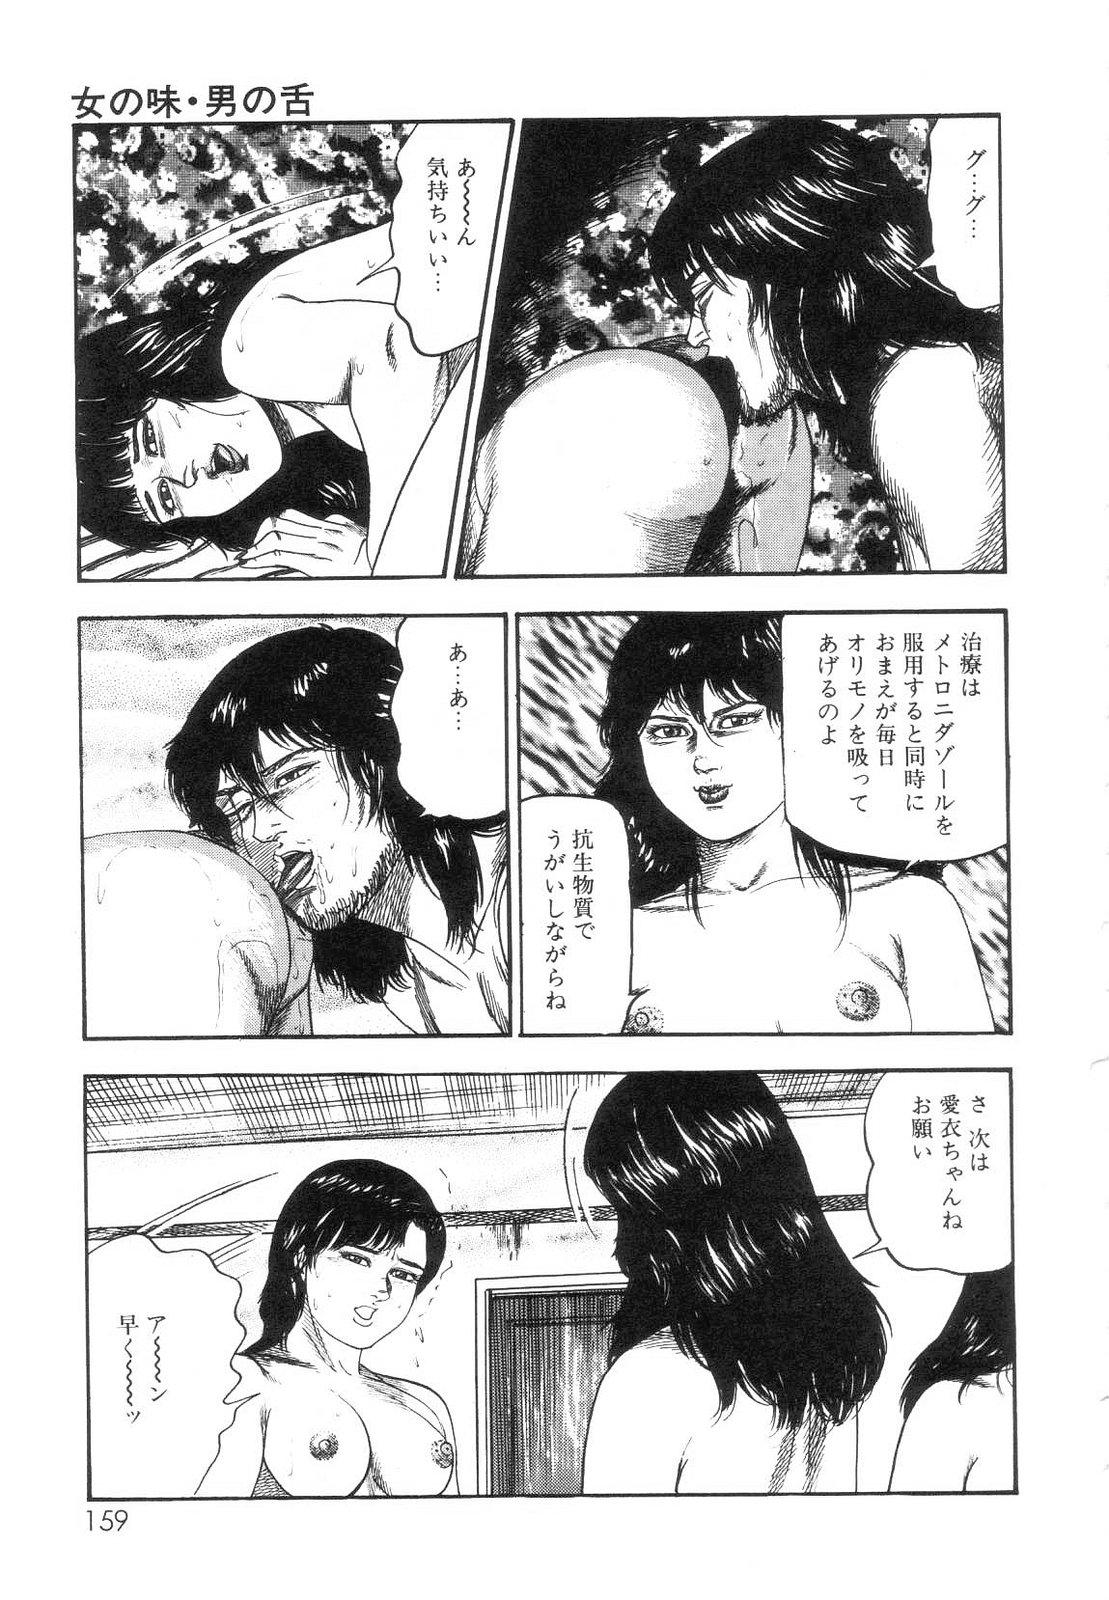 Shiro no Mokushiroku Vol. 7 - Shiiku Ningyou Erika no Shou 160